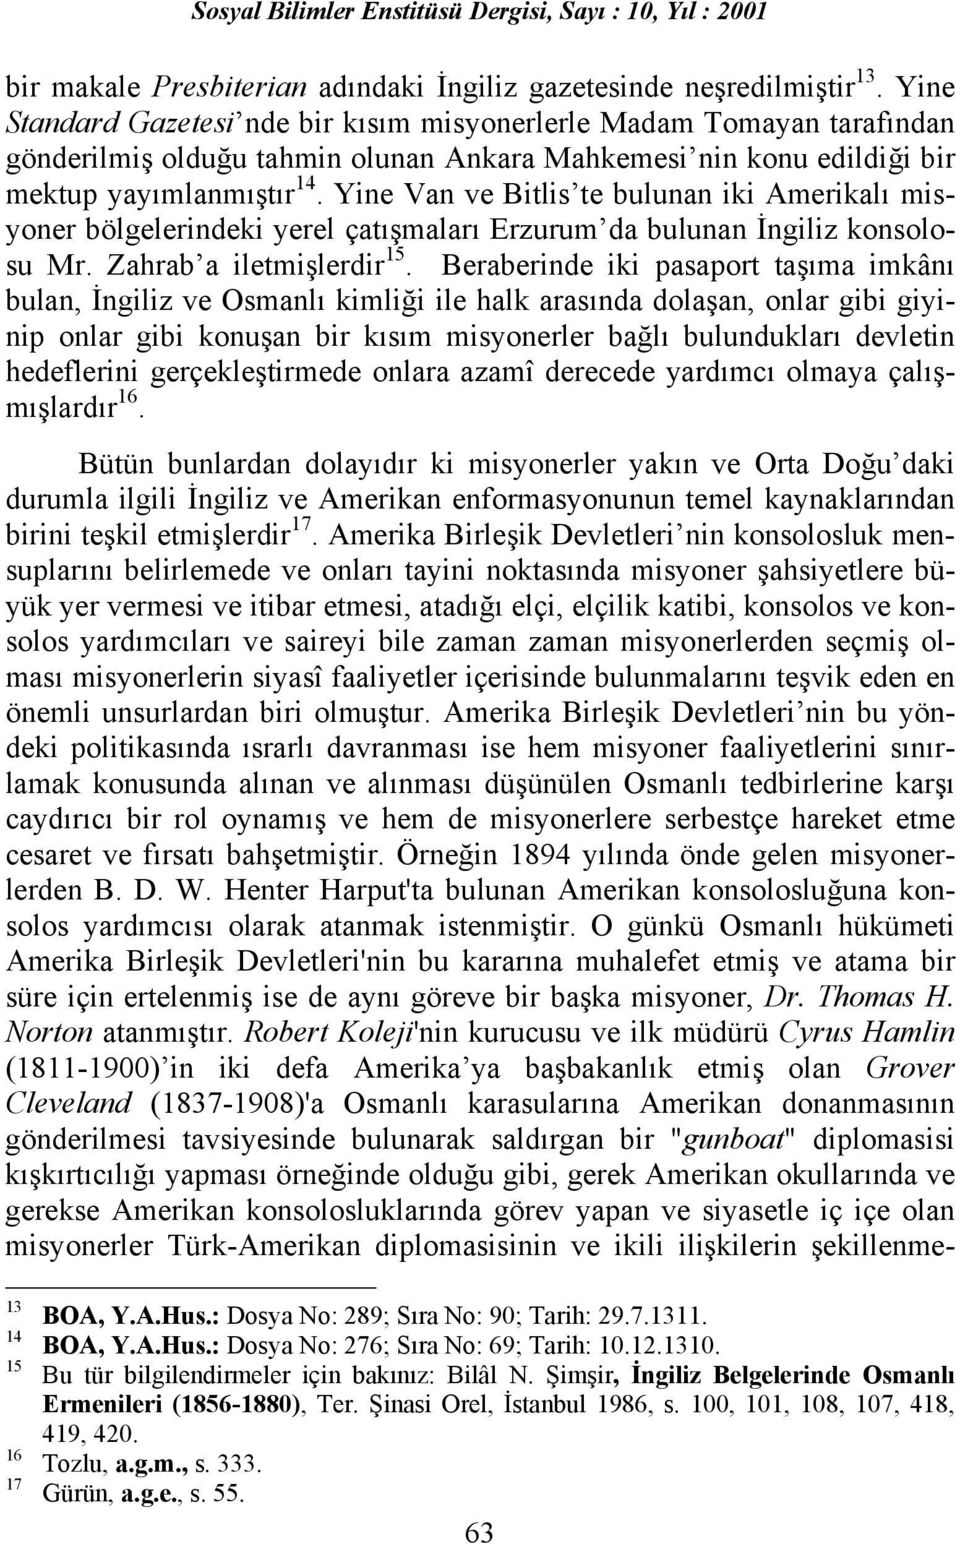 Yine Van ve Bitlis te bulunan iki Amerikalõ misyoner bölgelerindeki yerel çatõşmalarõ Erzurum da bulunan İngiliz konsolosu Mr. Zahrab a iletmişlerdir 15.